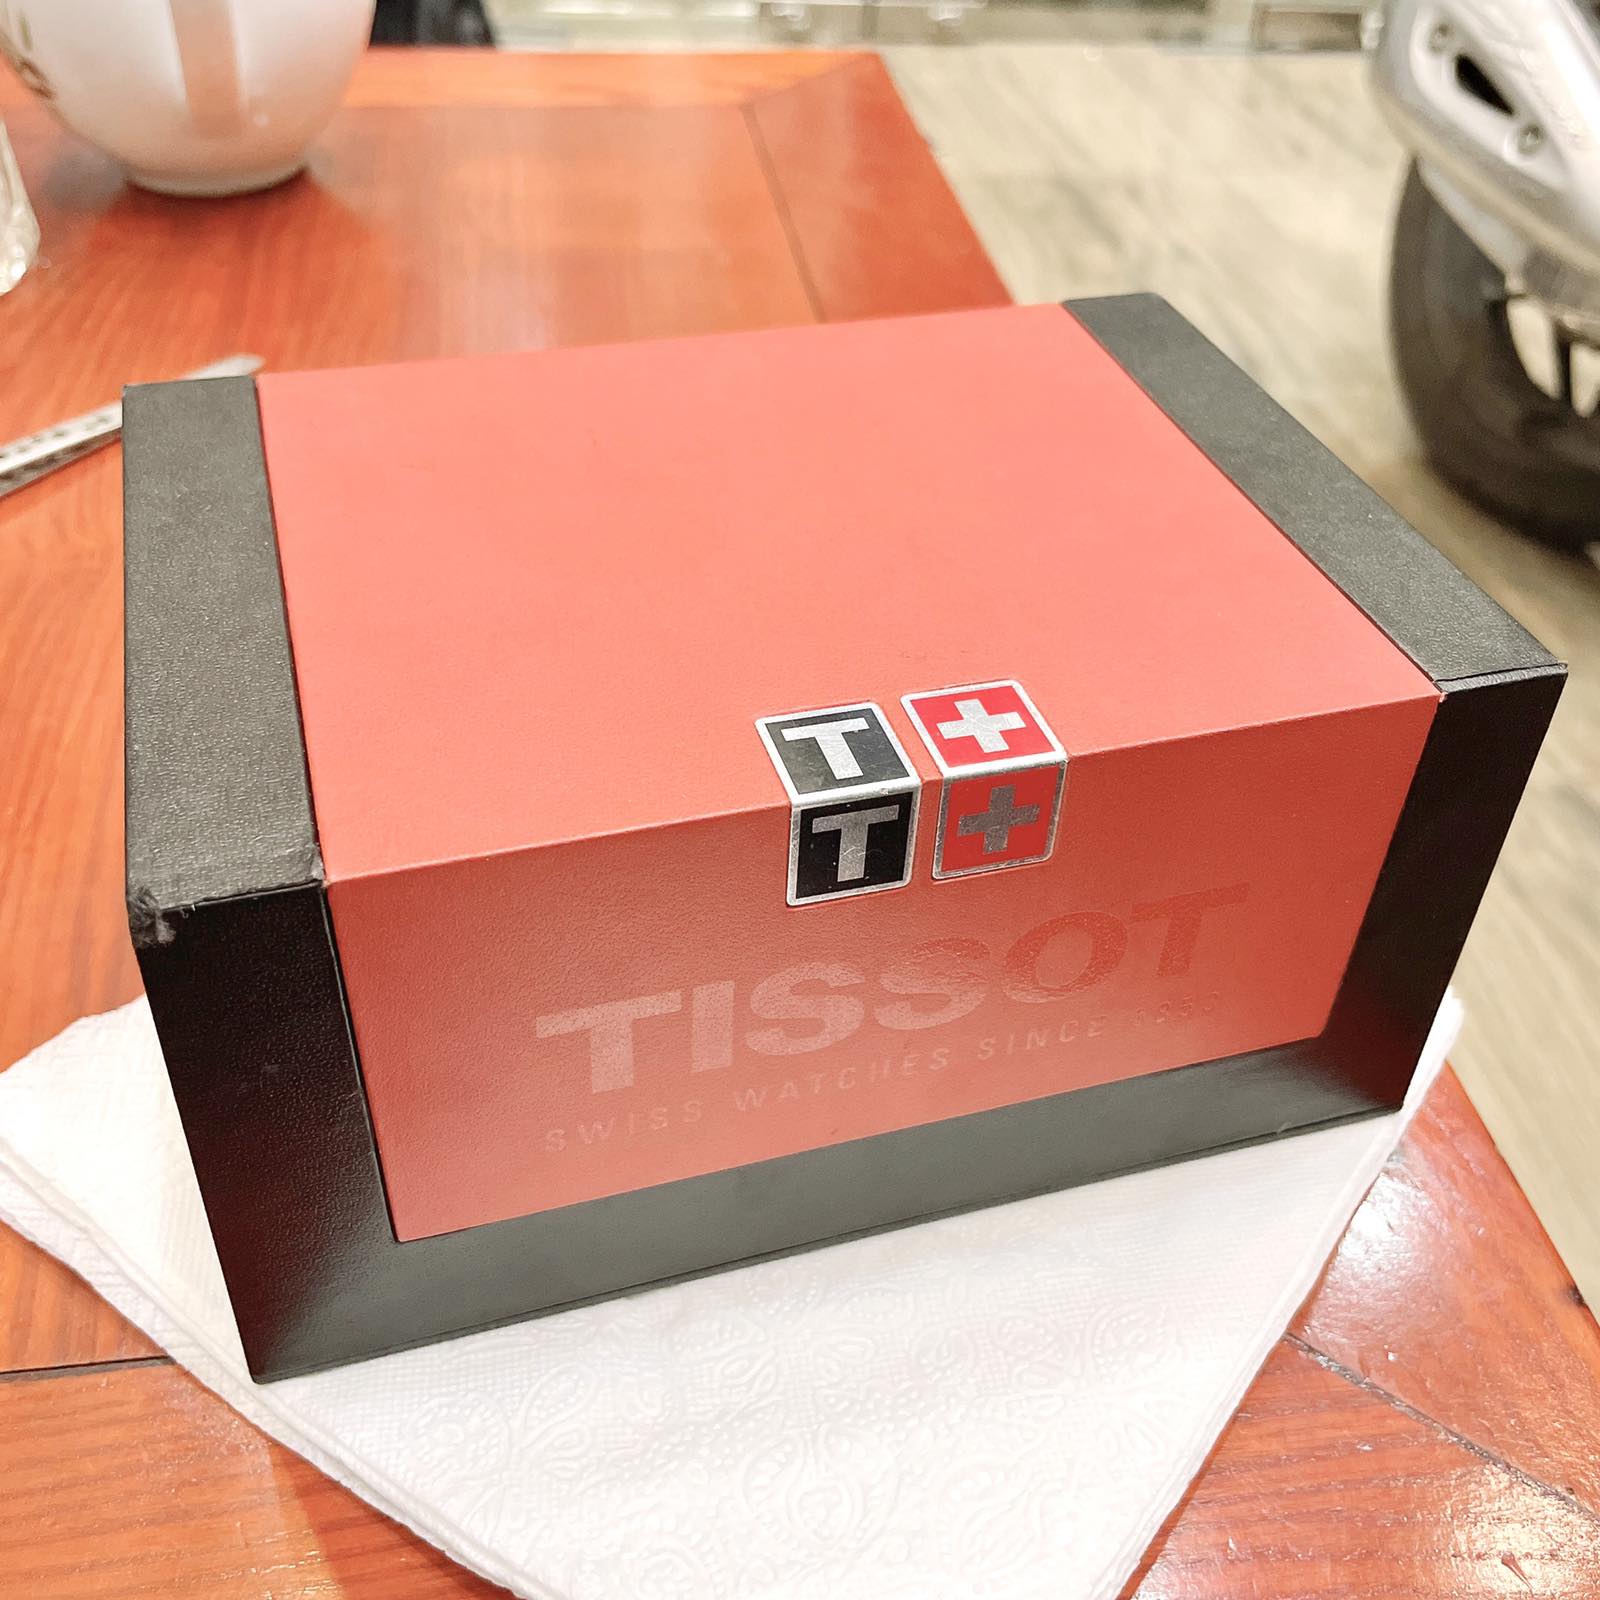 Đồng hồ Tissot Titanium T069.417.031.00 chính hãng Thụy Sĩ 